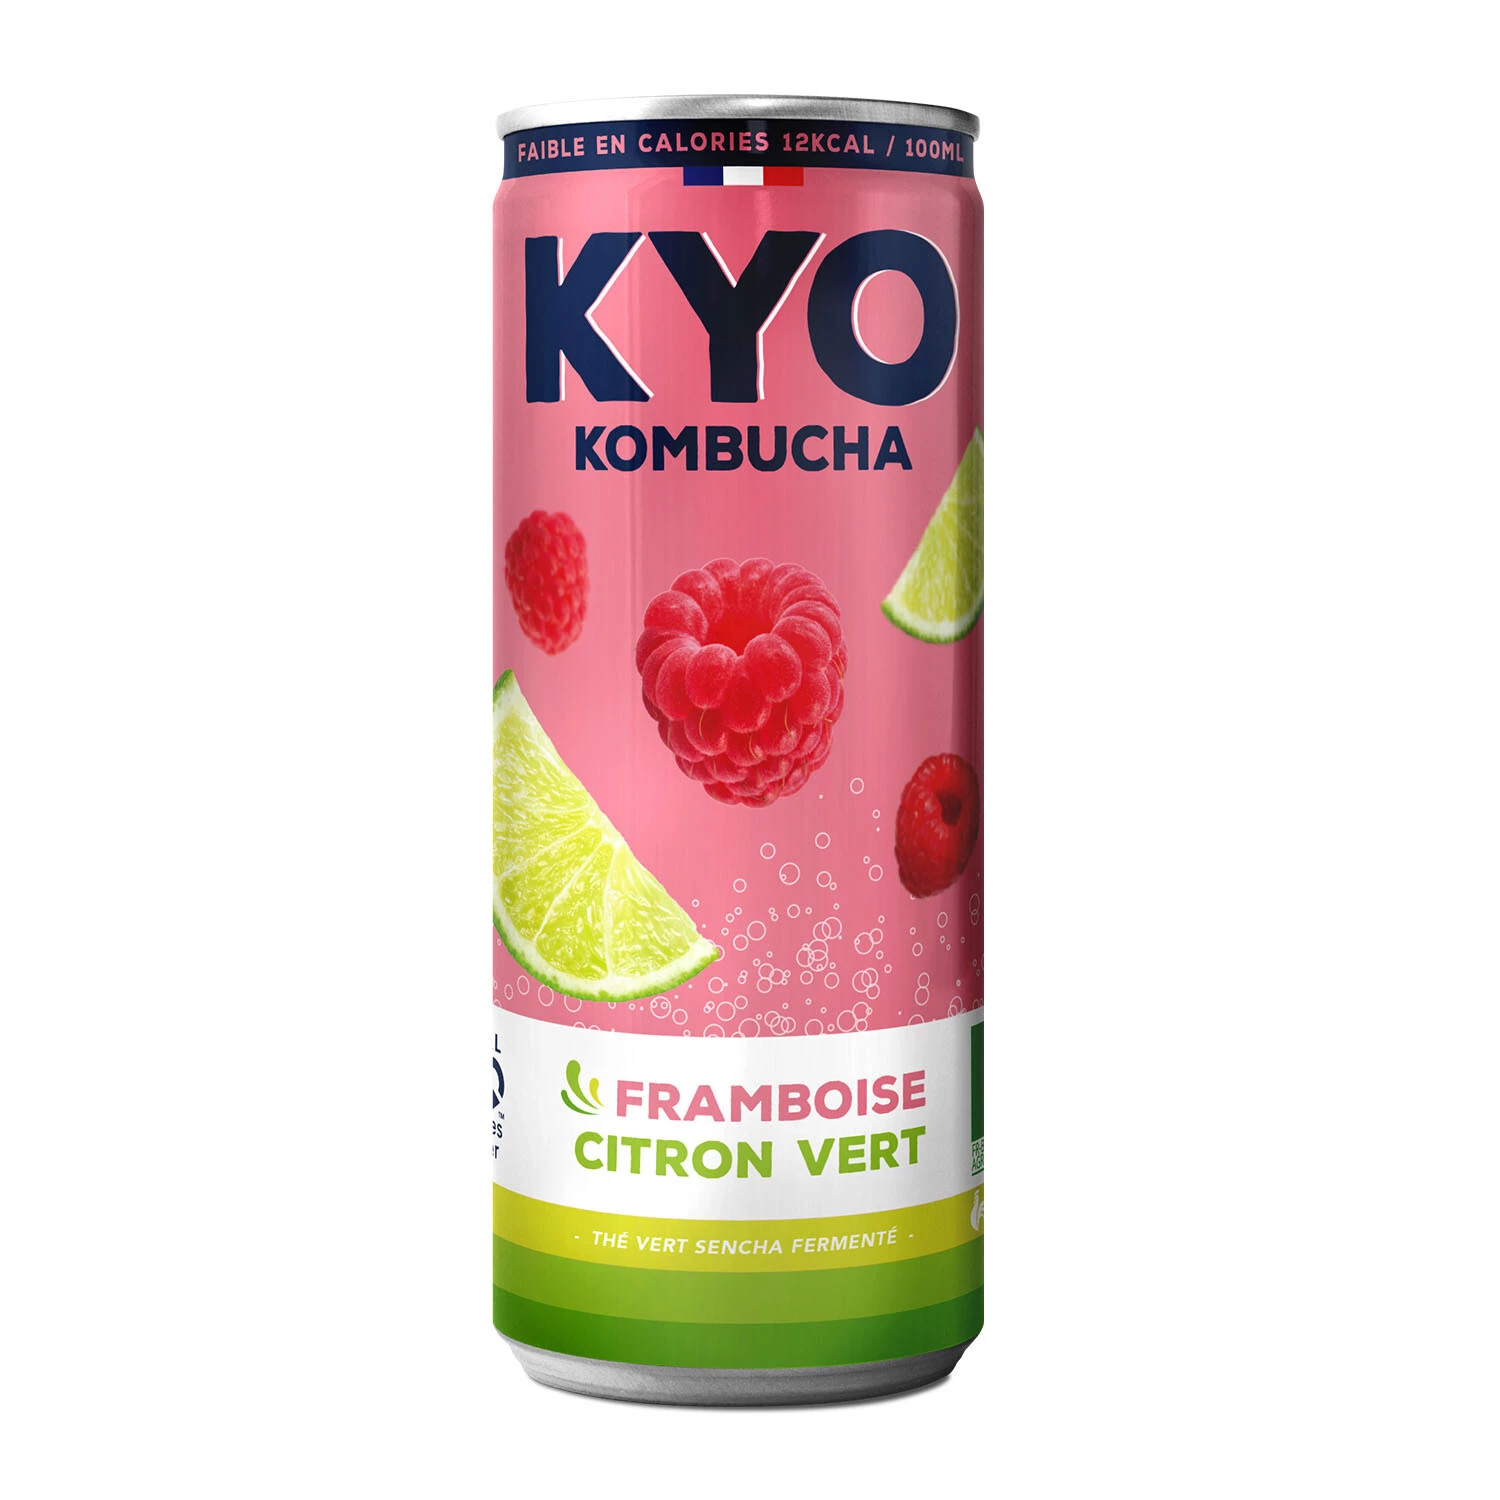 覆盆子酸橙罐头，33cl -  KYO KOMBUCHA